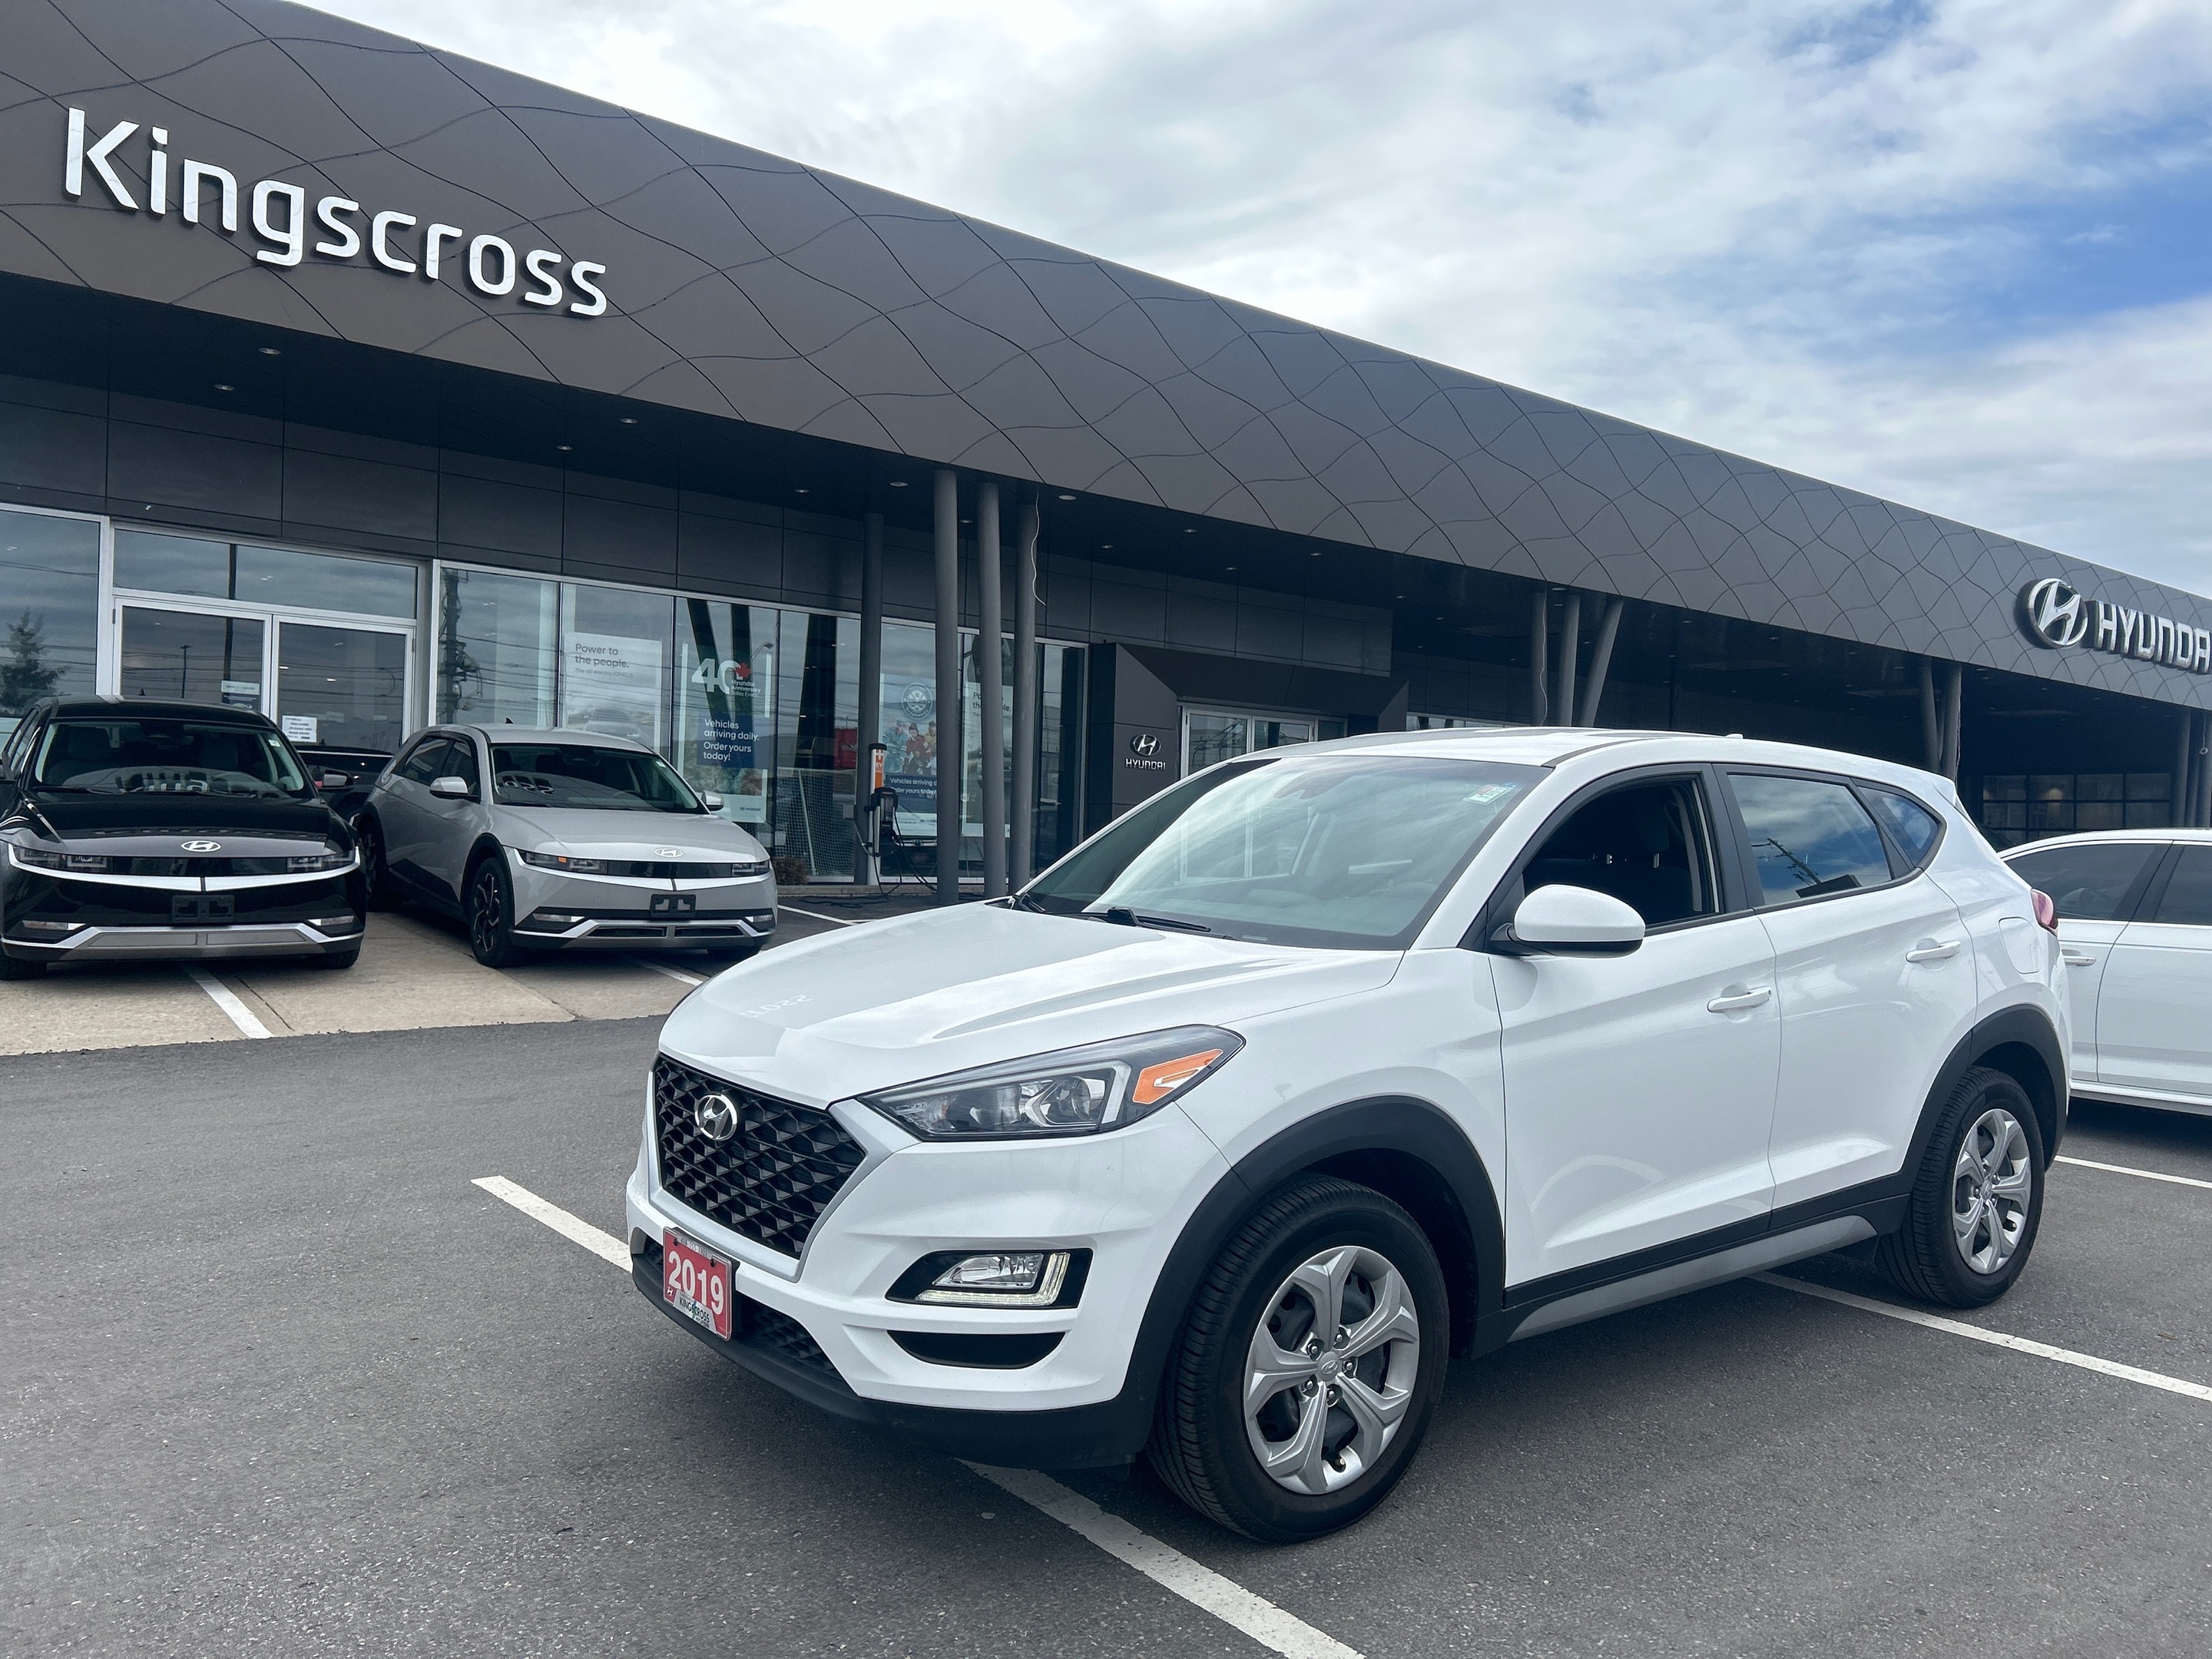 2019 Hyundai Tucson Essential w/Safety Package